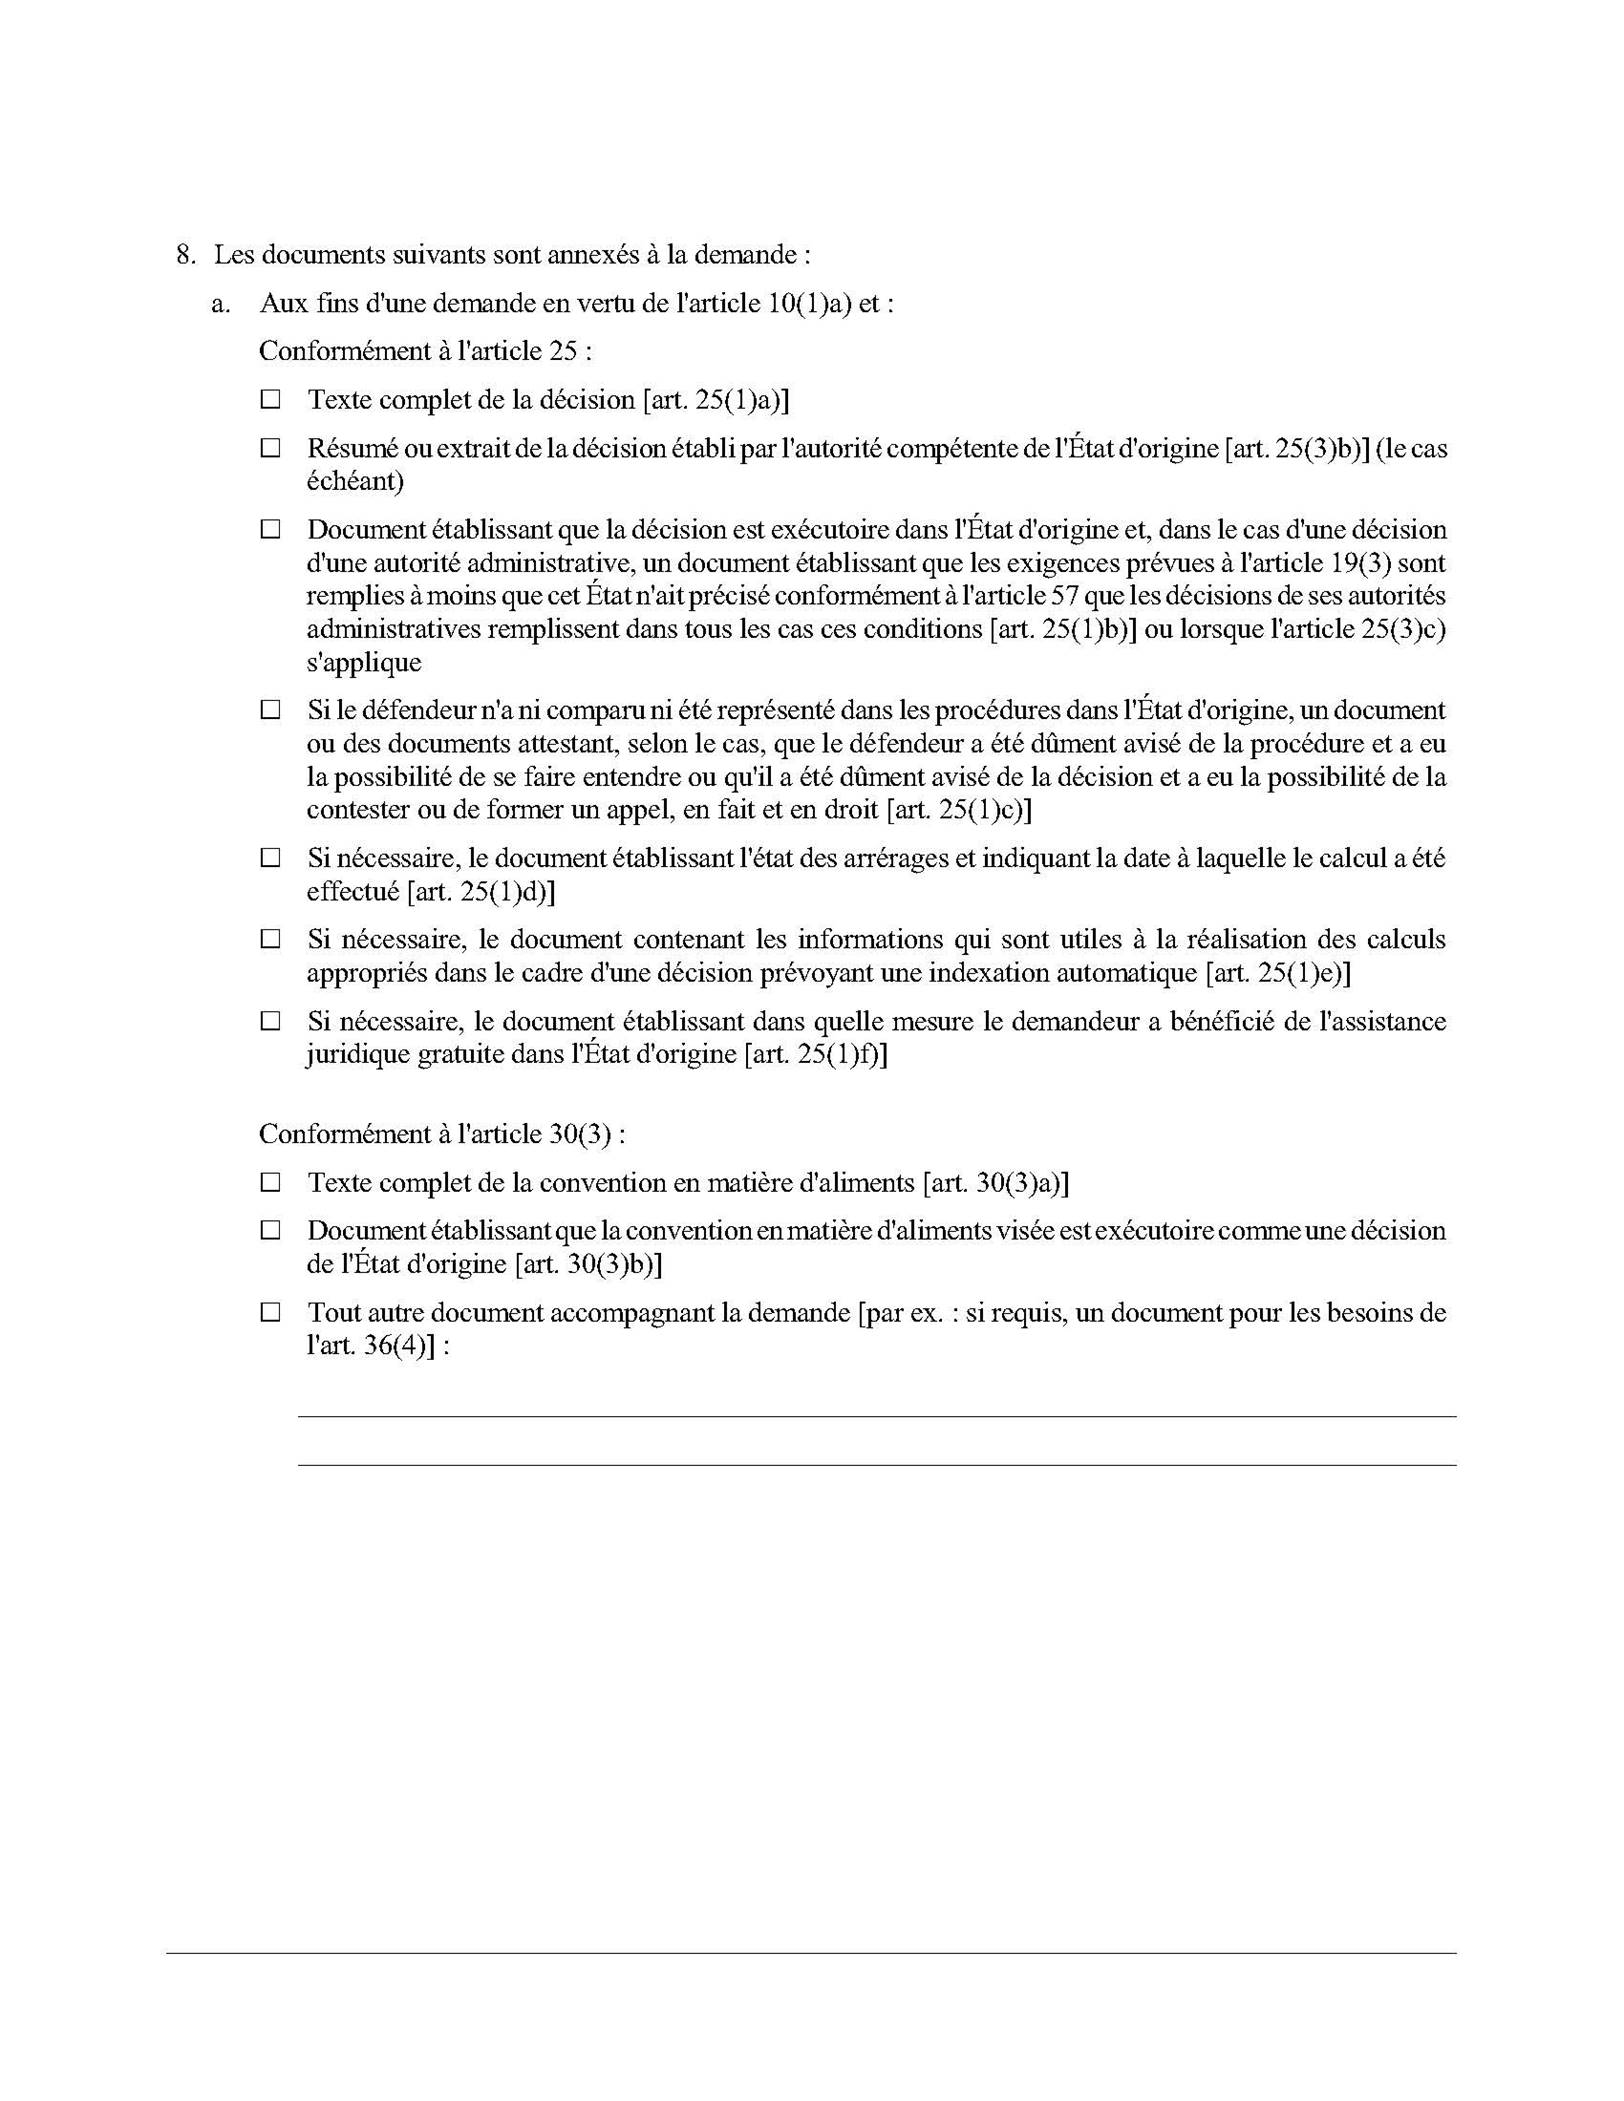 Page 3 du Formulaire de transmission en vertu de l'article 12(2)

Description automatically generated